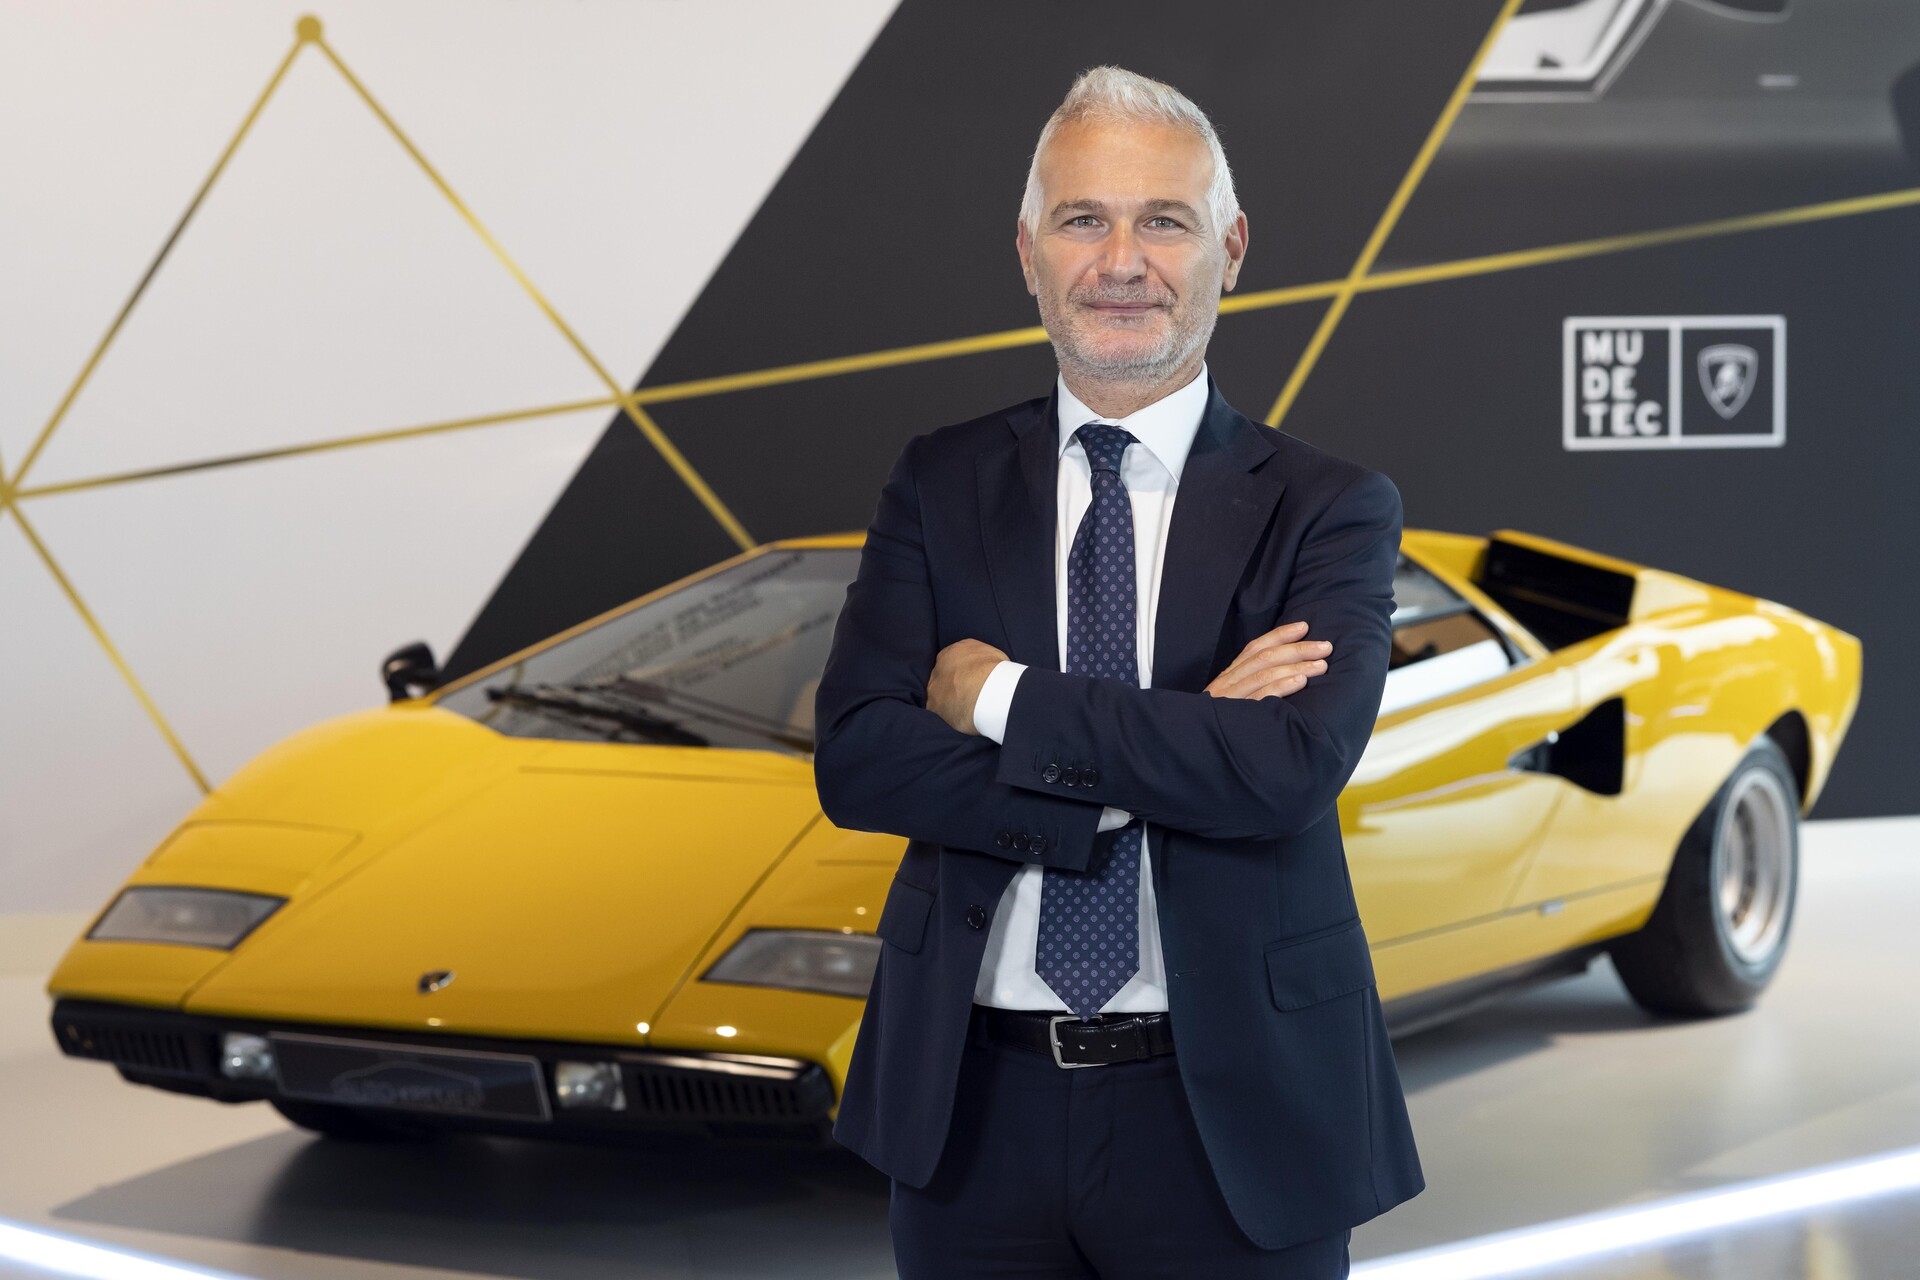 Lanzador: Christian Mastro è Direttore Marketing di Automobili Lamborghini